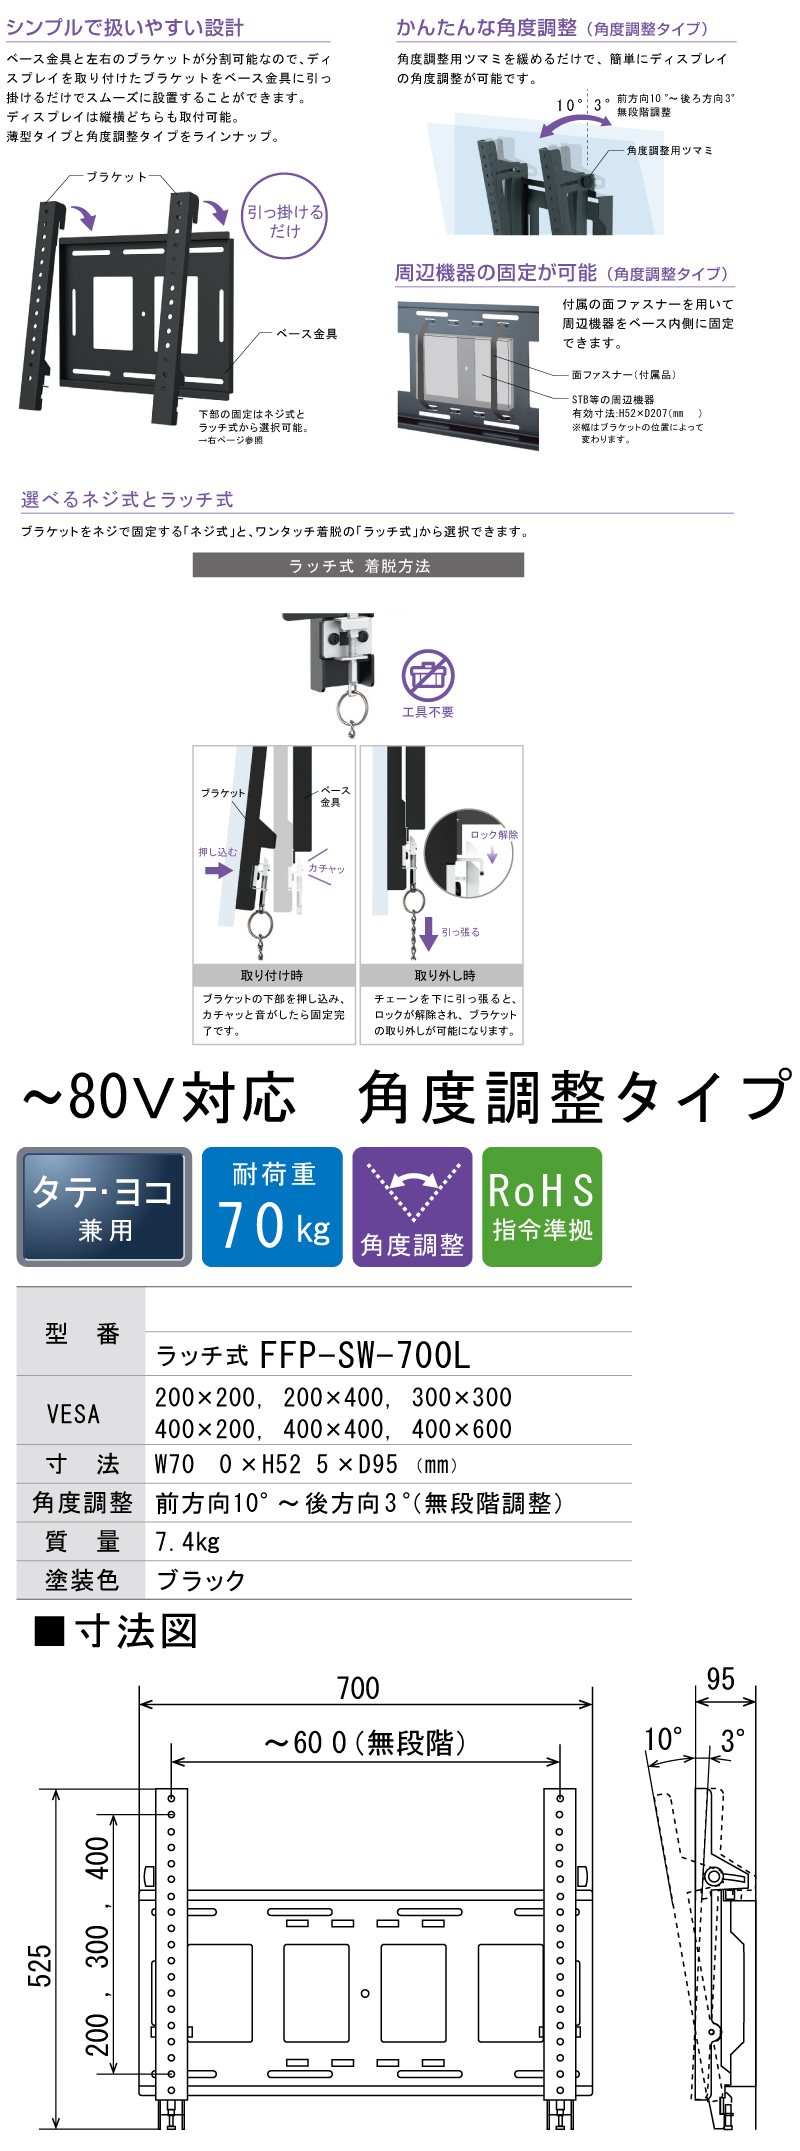 日本フォームサービス デジタルサイネージ壁掛け金具FFP-SW-400